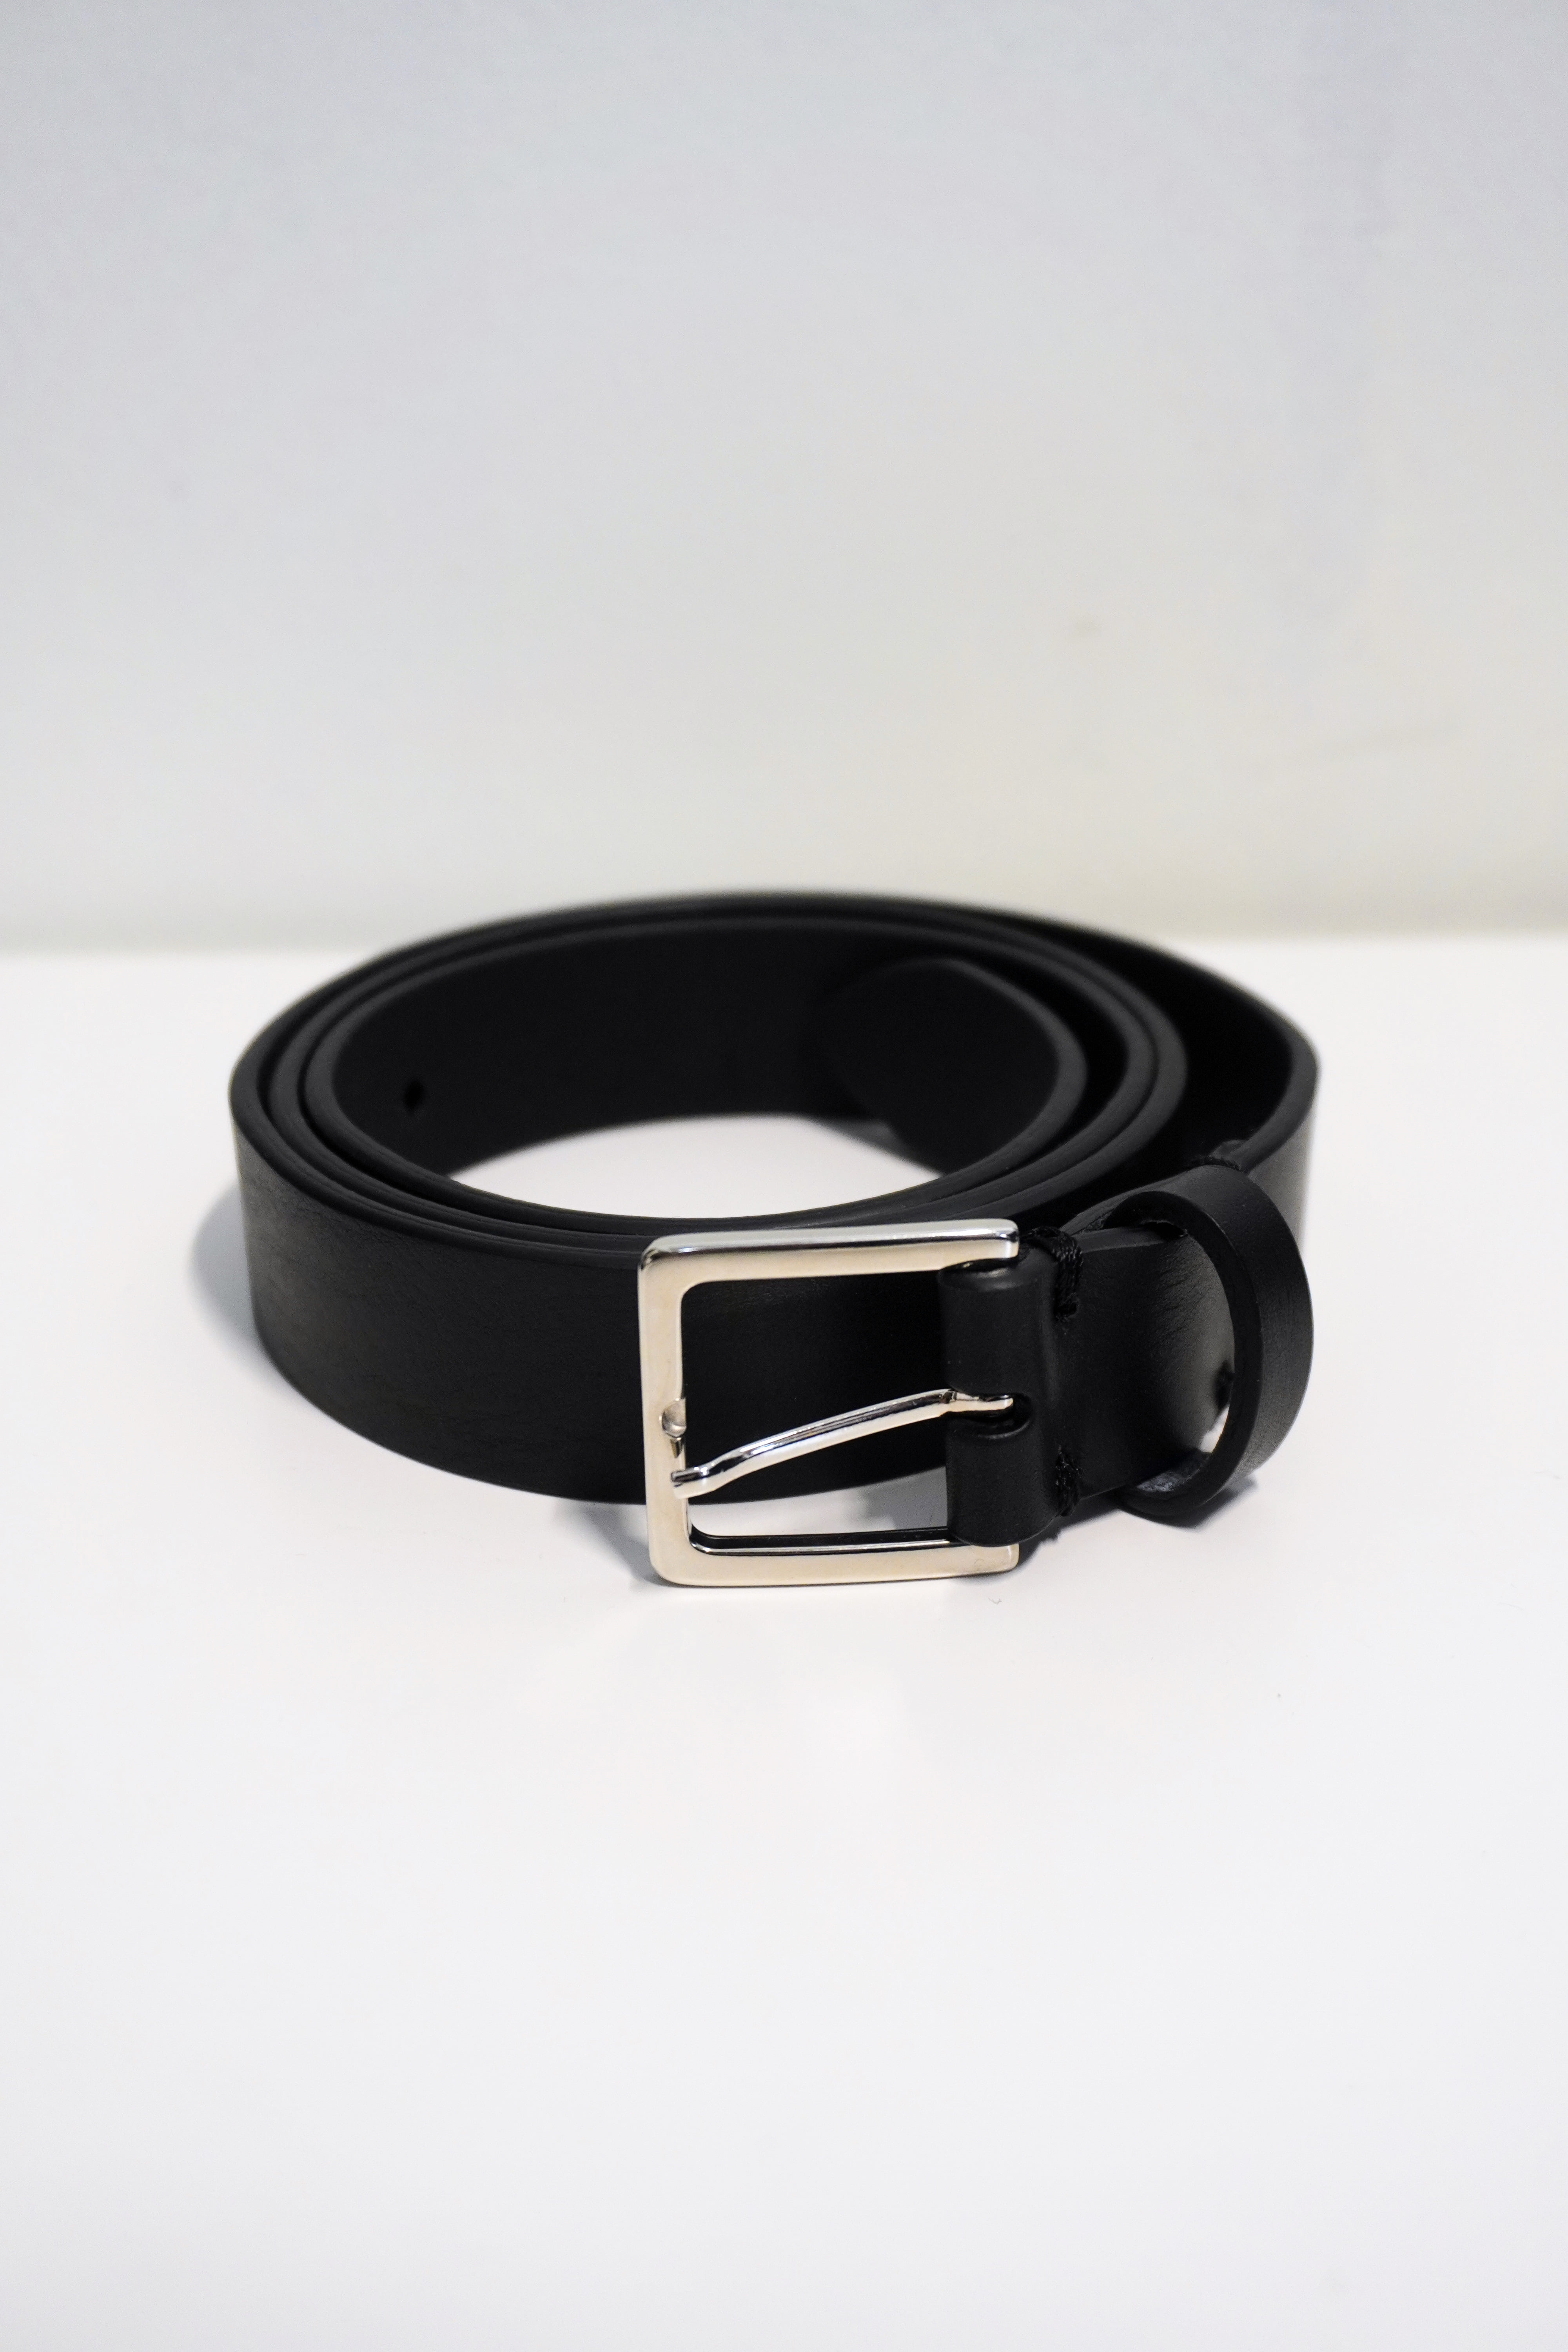 [STEVE MONO] Belt 01 25mm - Black